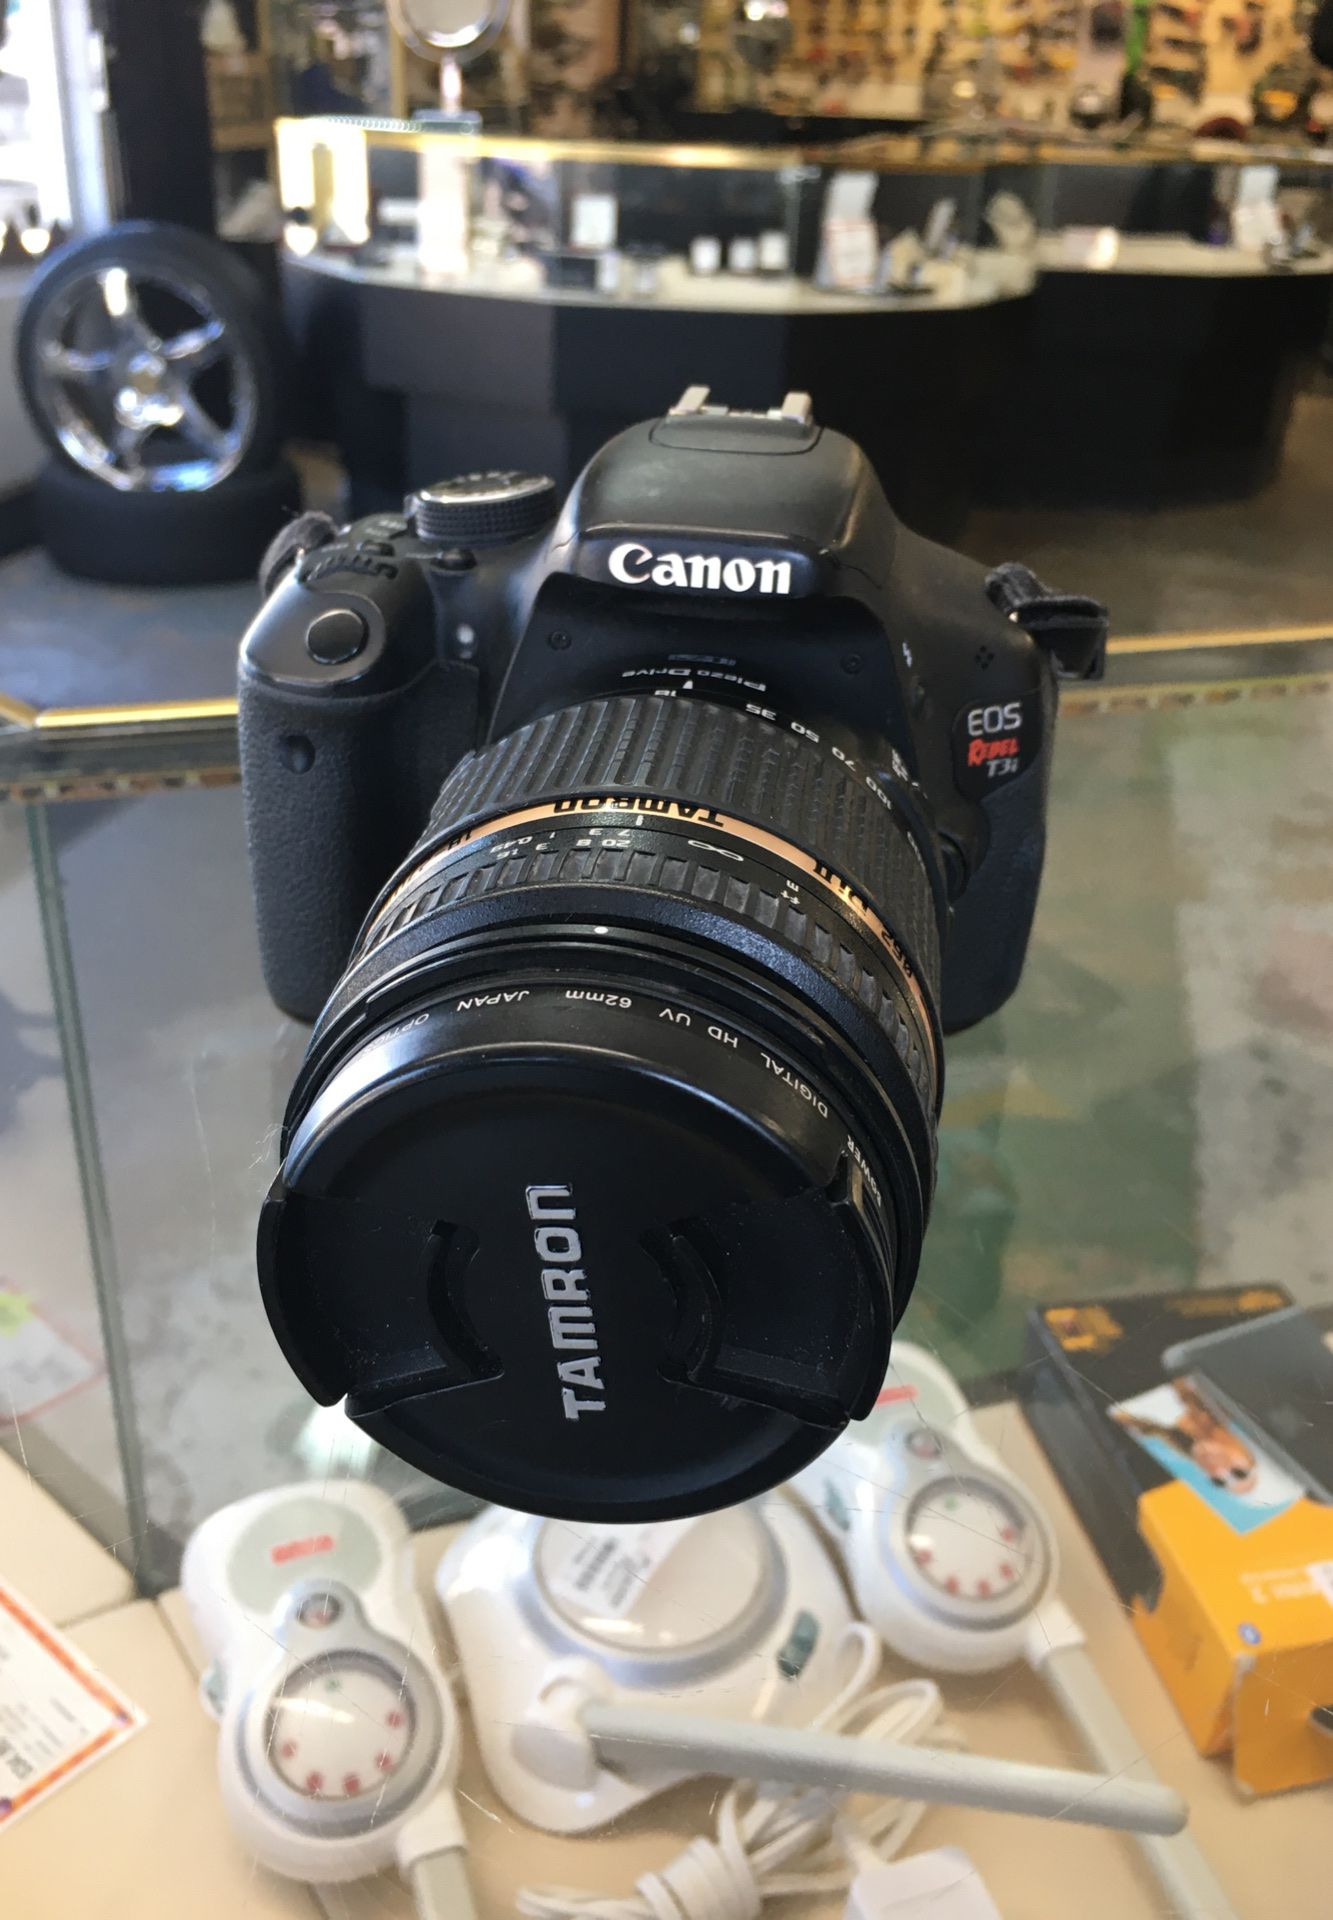 Canon E05 Rebel T31 Digital Camera